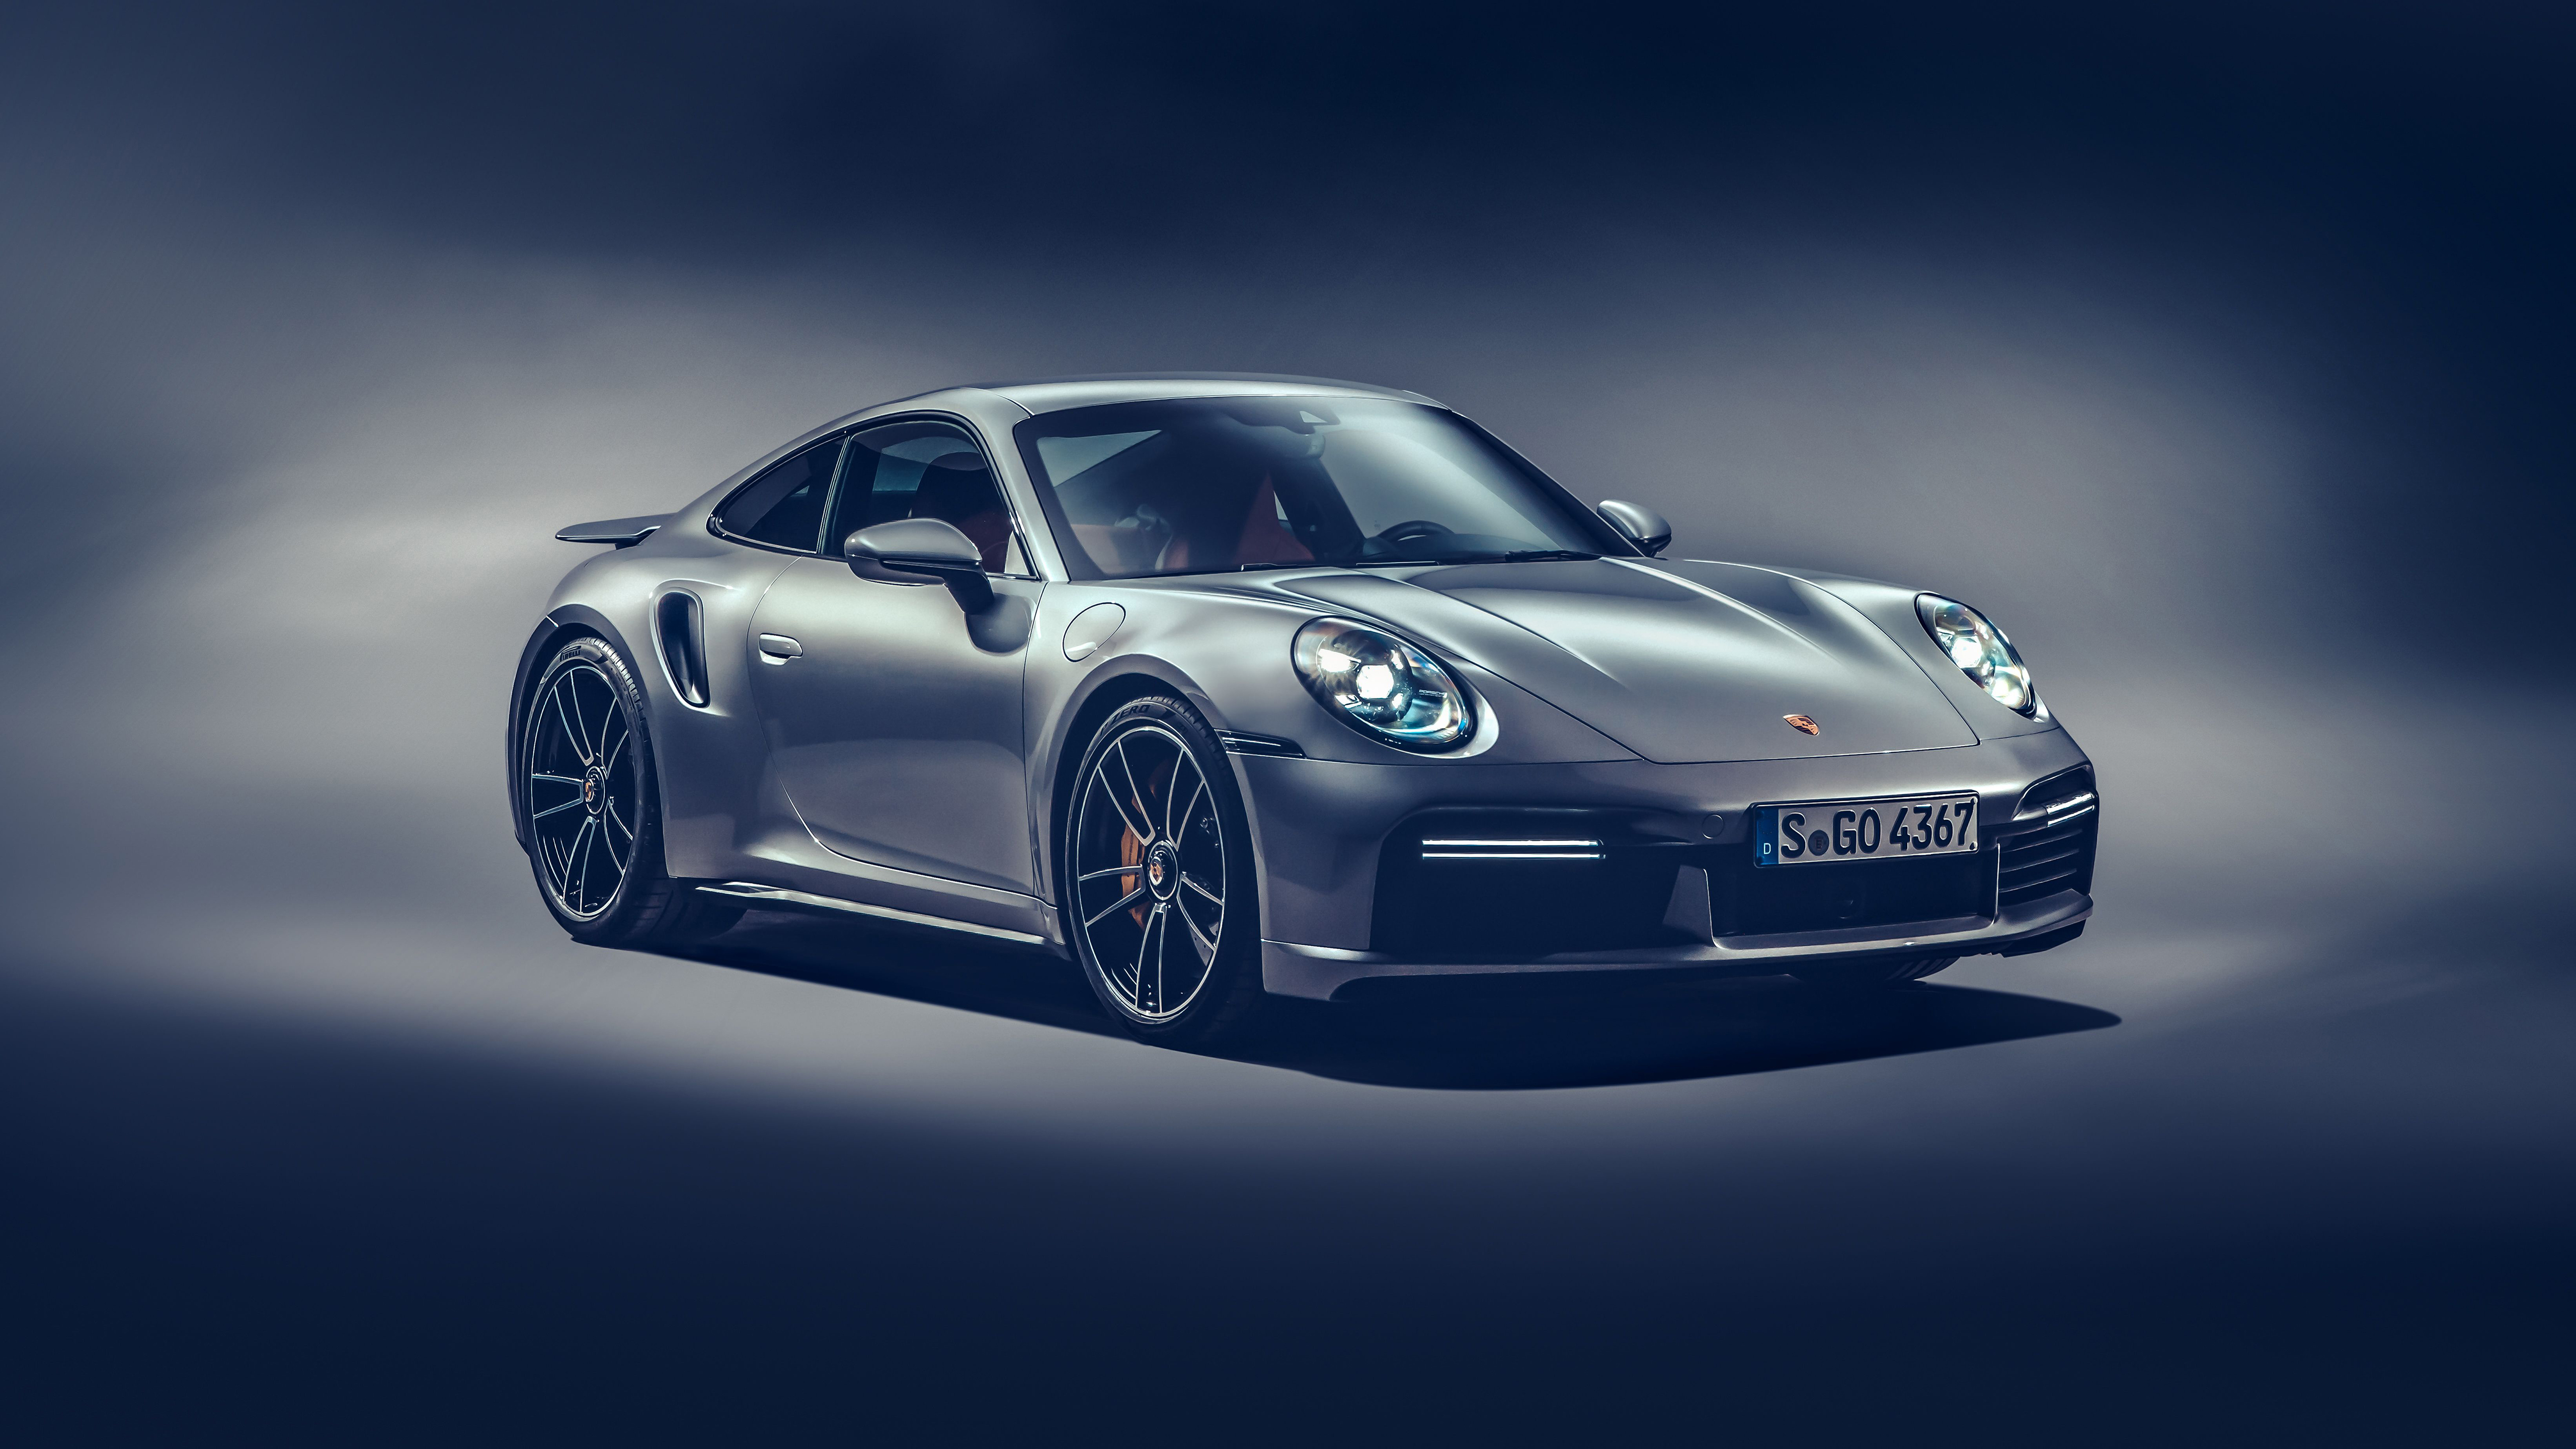 Các tín đồ của Porsche 911 sẽ thích thú với bức ảnh nền trang trí chiếc Porsche 911 Turbo S huyền thoại này. Xem ngay để được ngắm nhìn chiếc xe đã được nâng cấp và tinh chỉnh để trở nên hoàn hảo hơn.